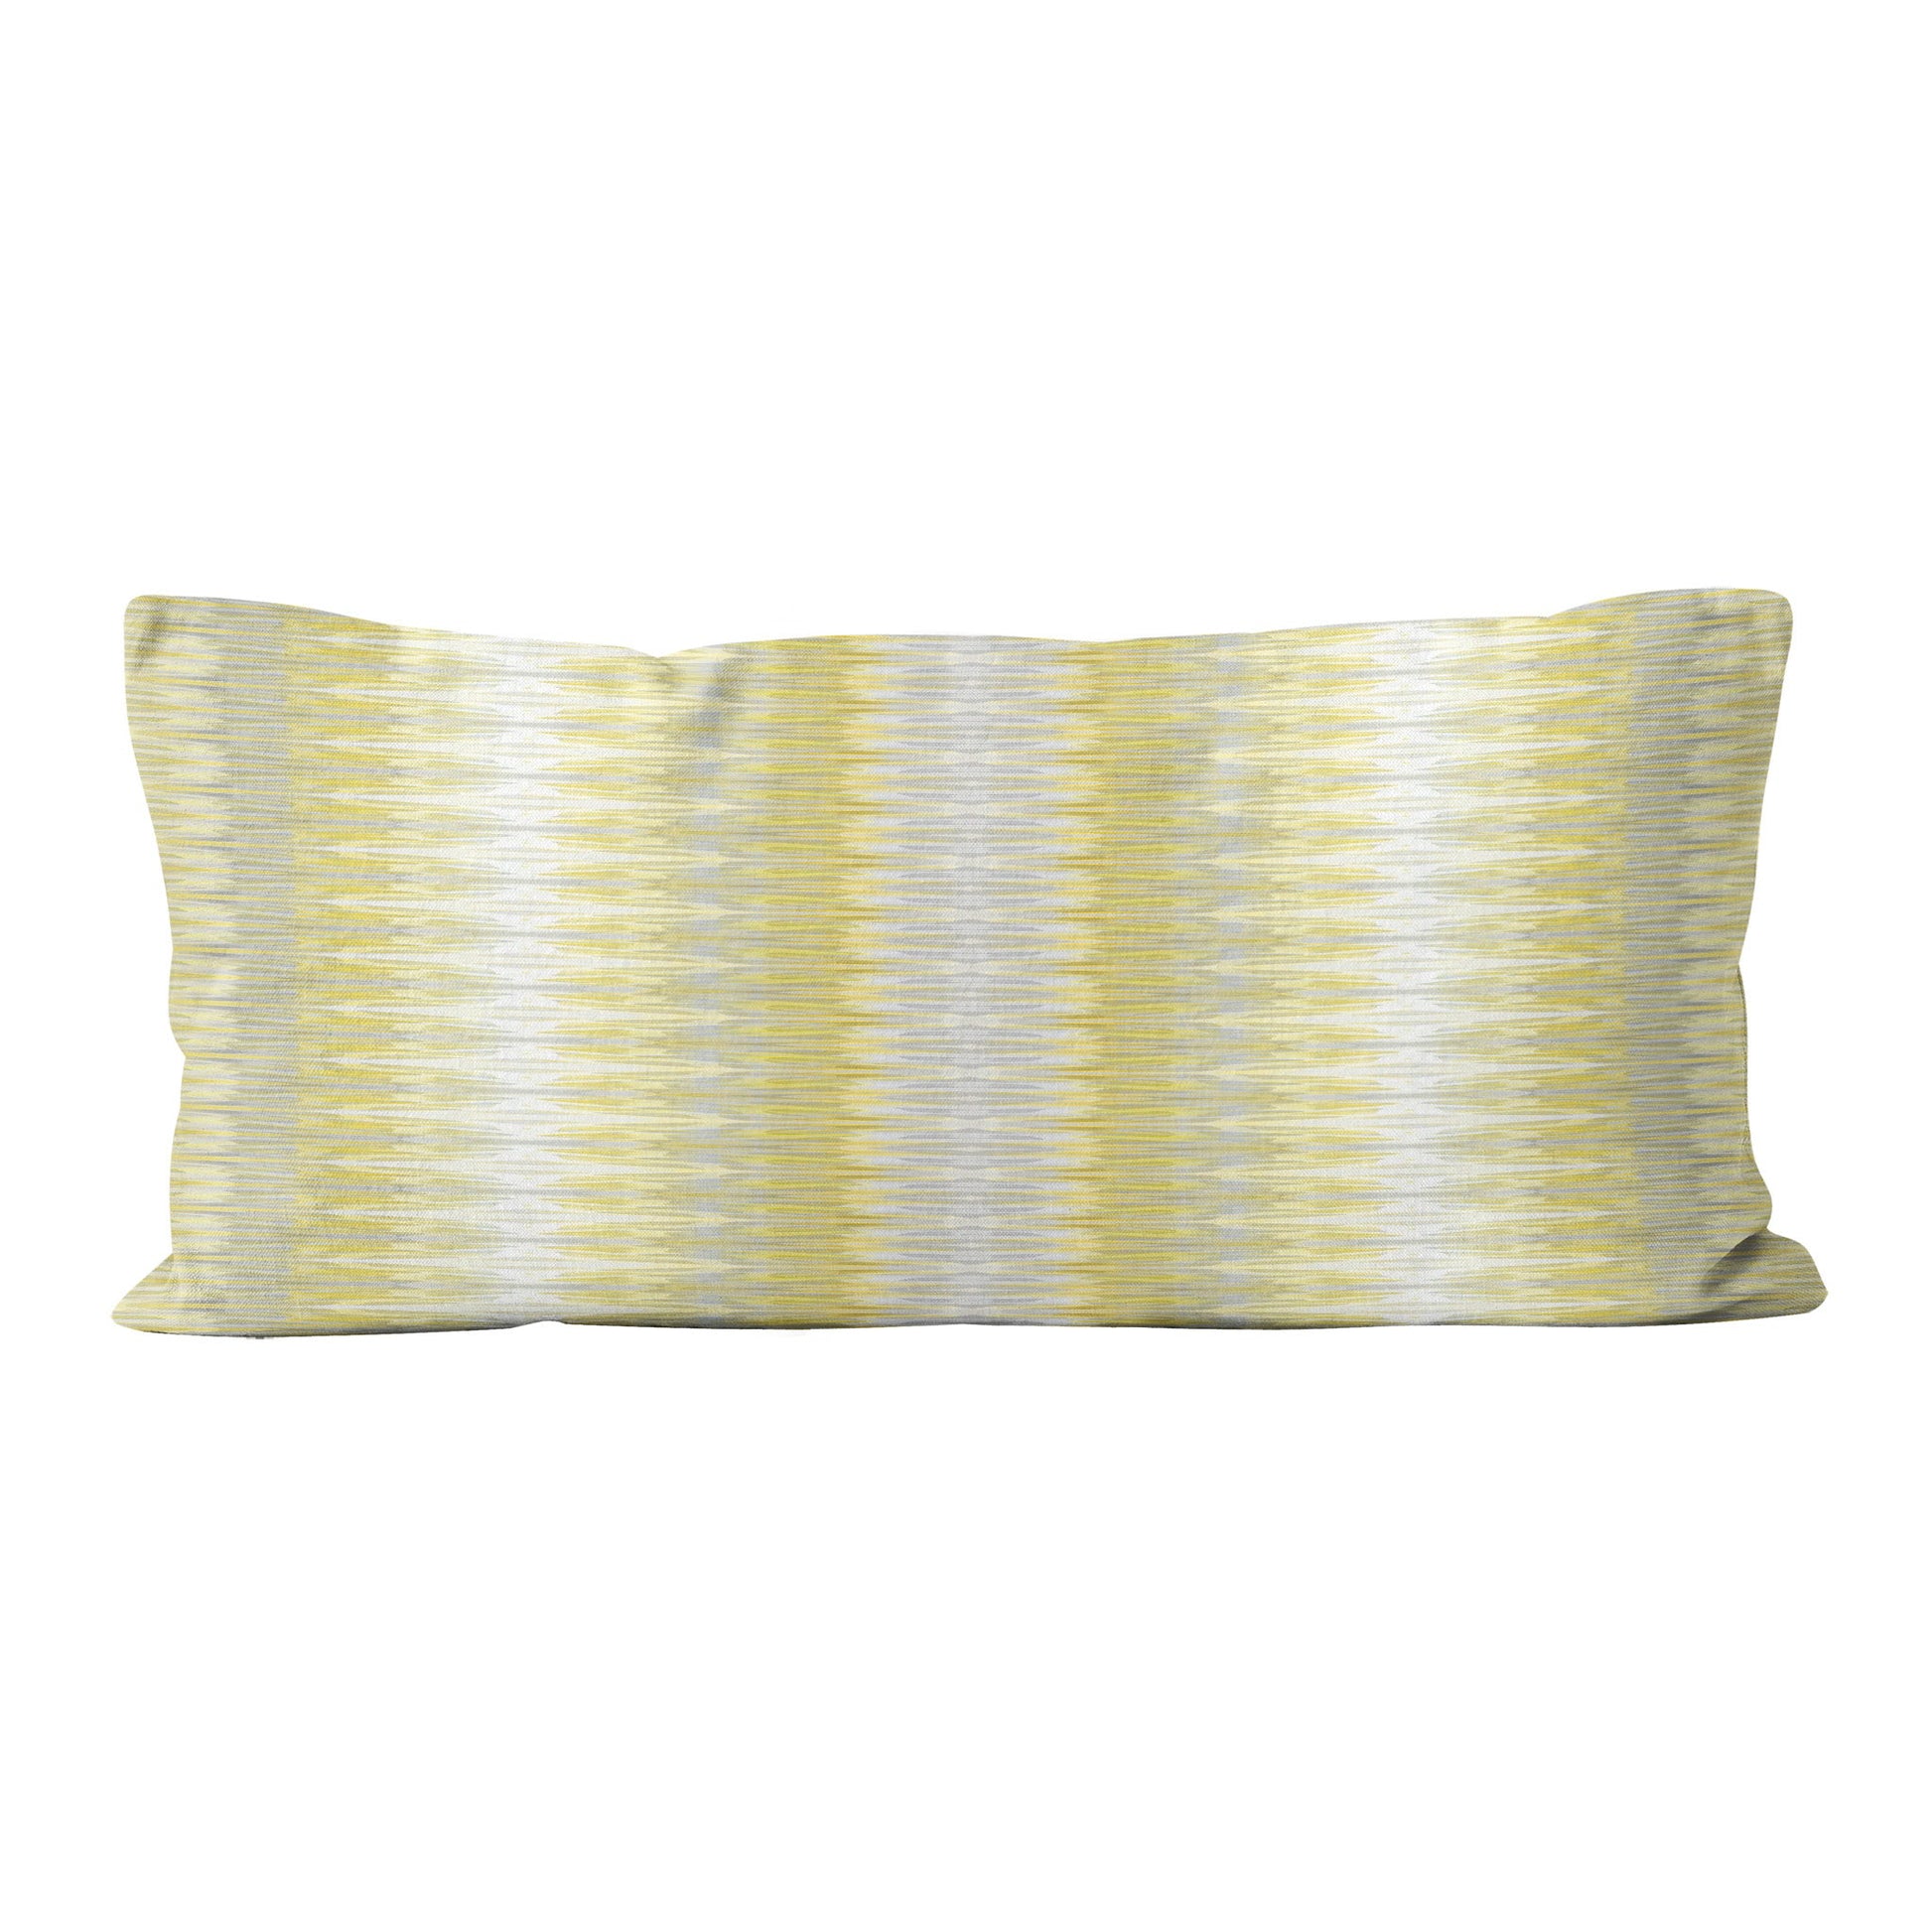 Rectangular lumbar pillow featuring abstract yellow and gray stripe.